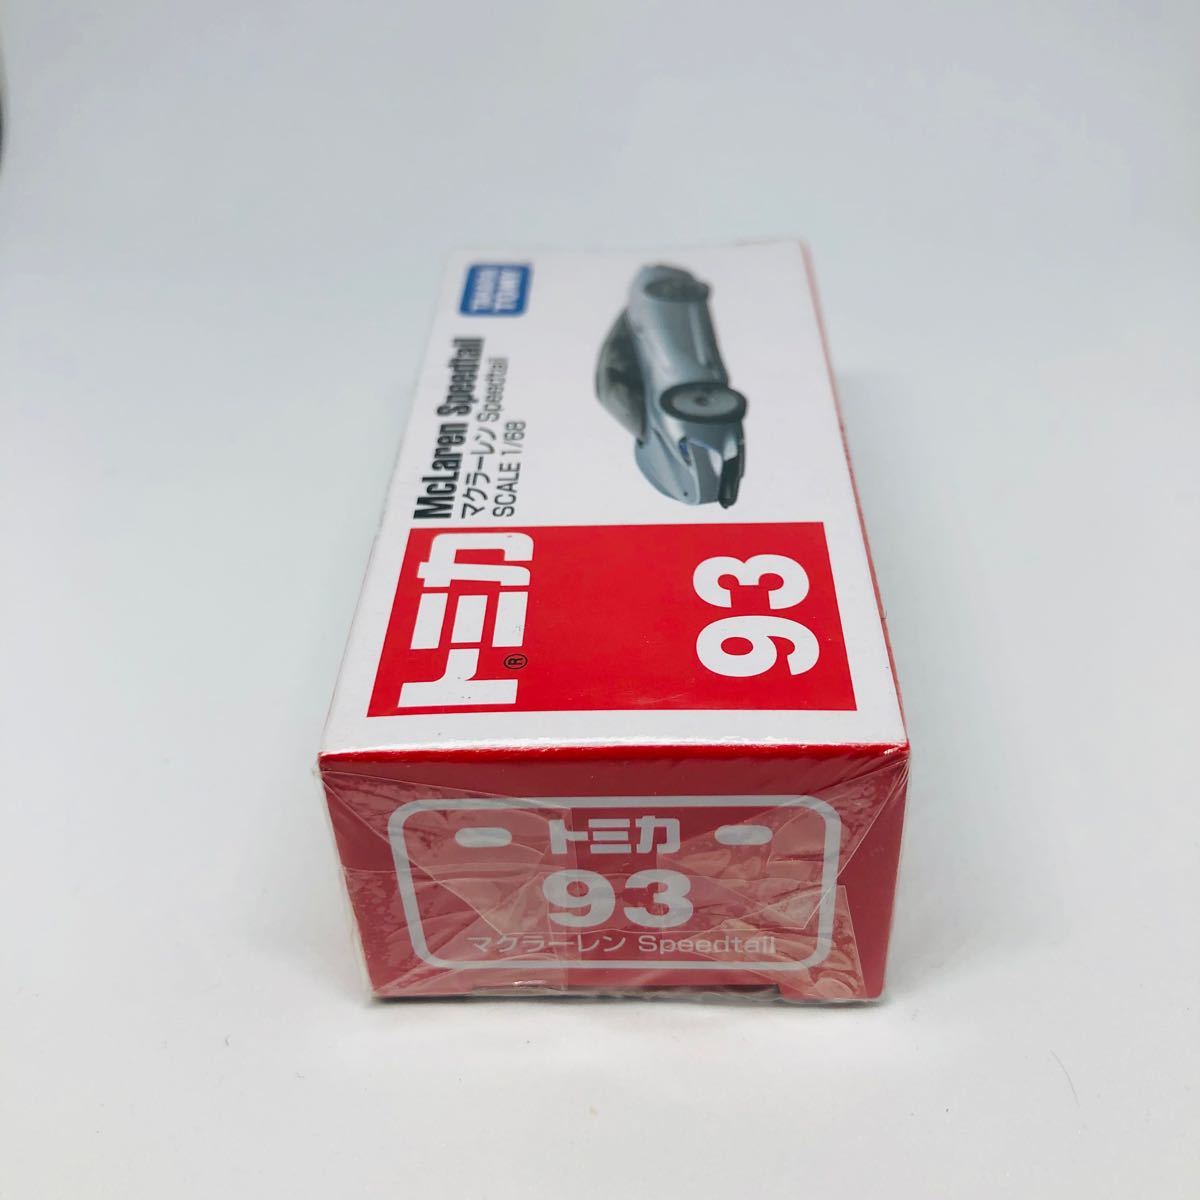 『未開封』トミカ NO.93 マクラーレン Speedtail 廃盤品　絶版